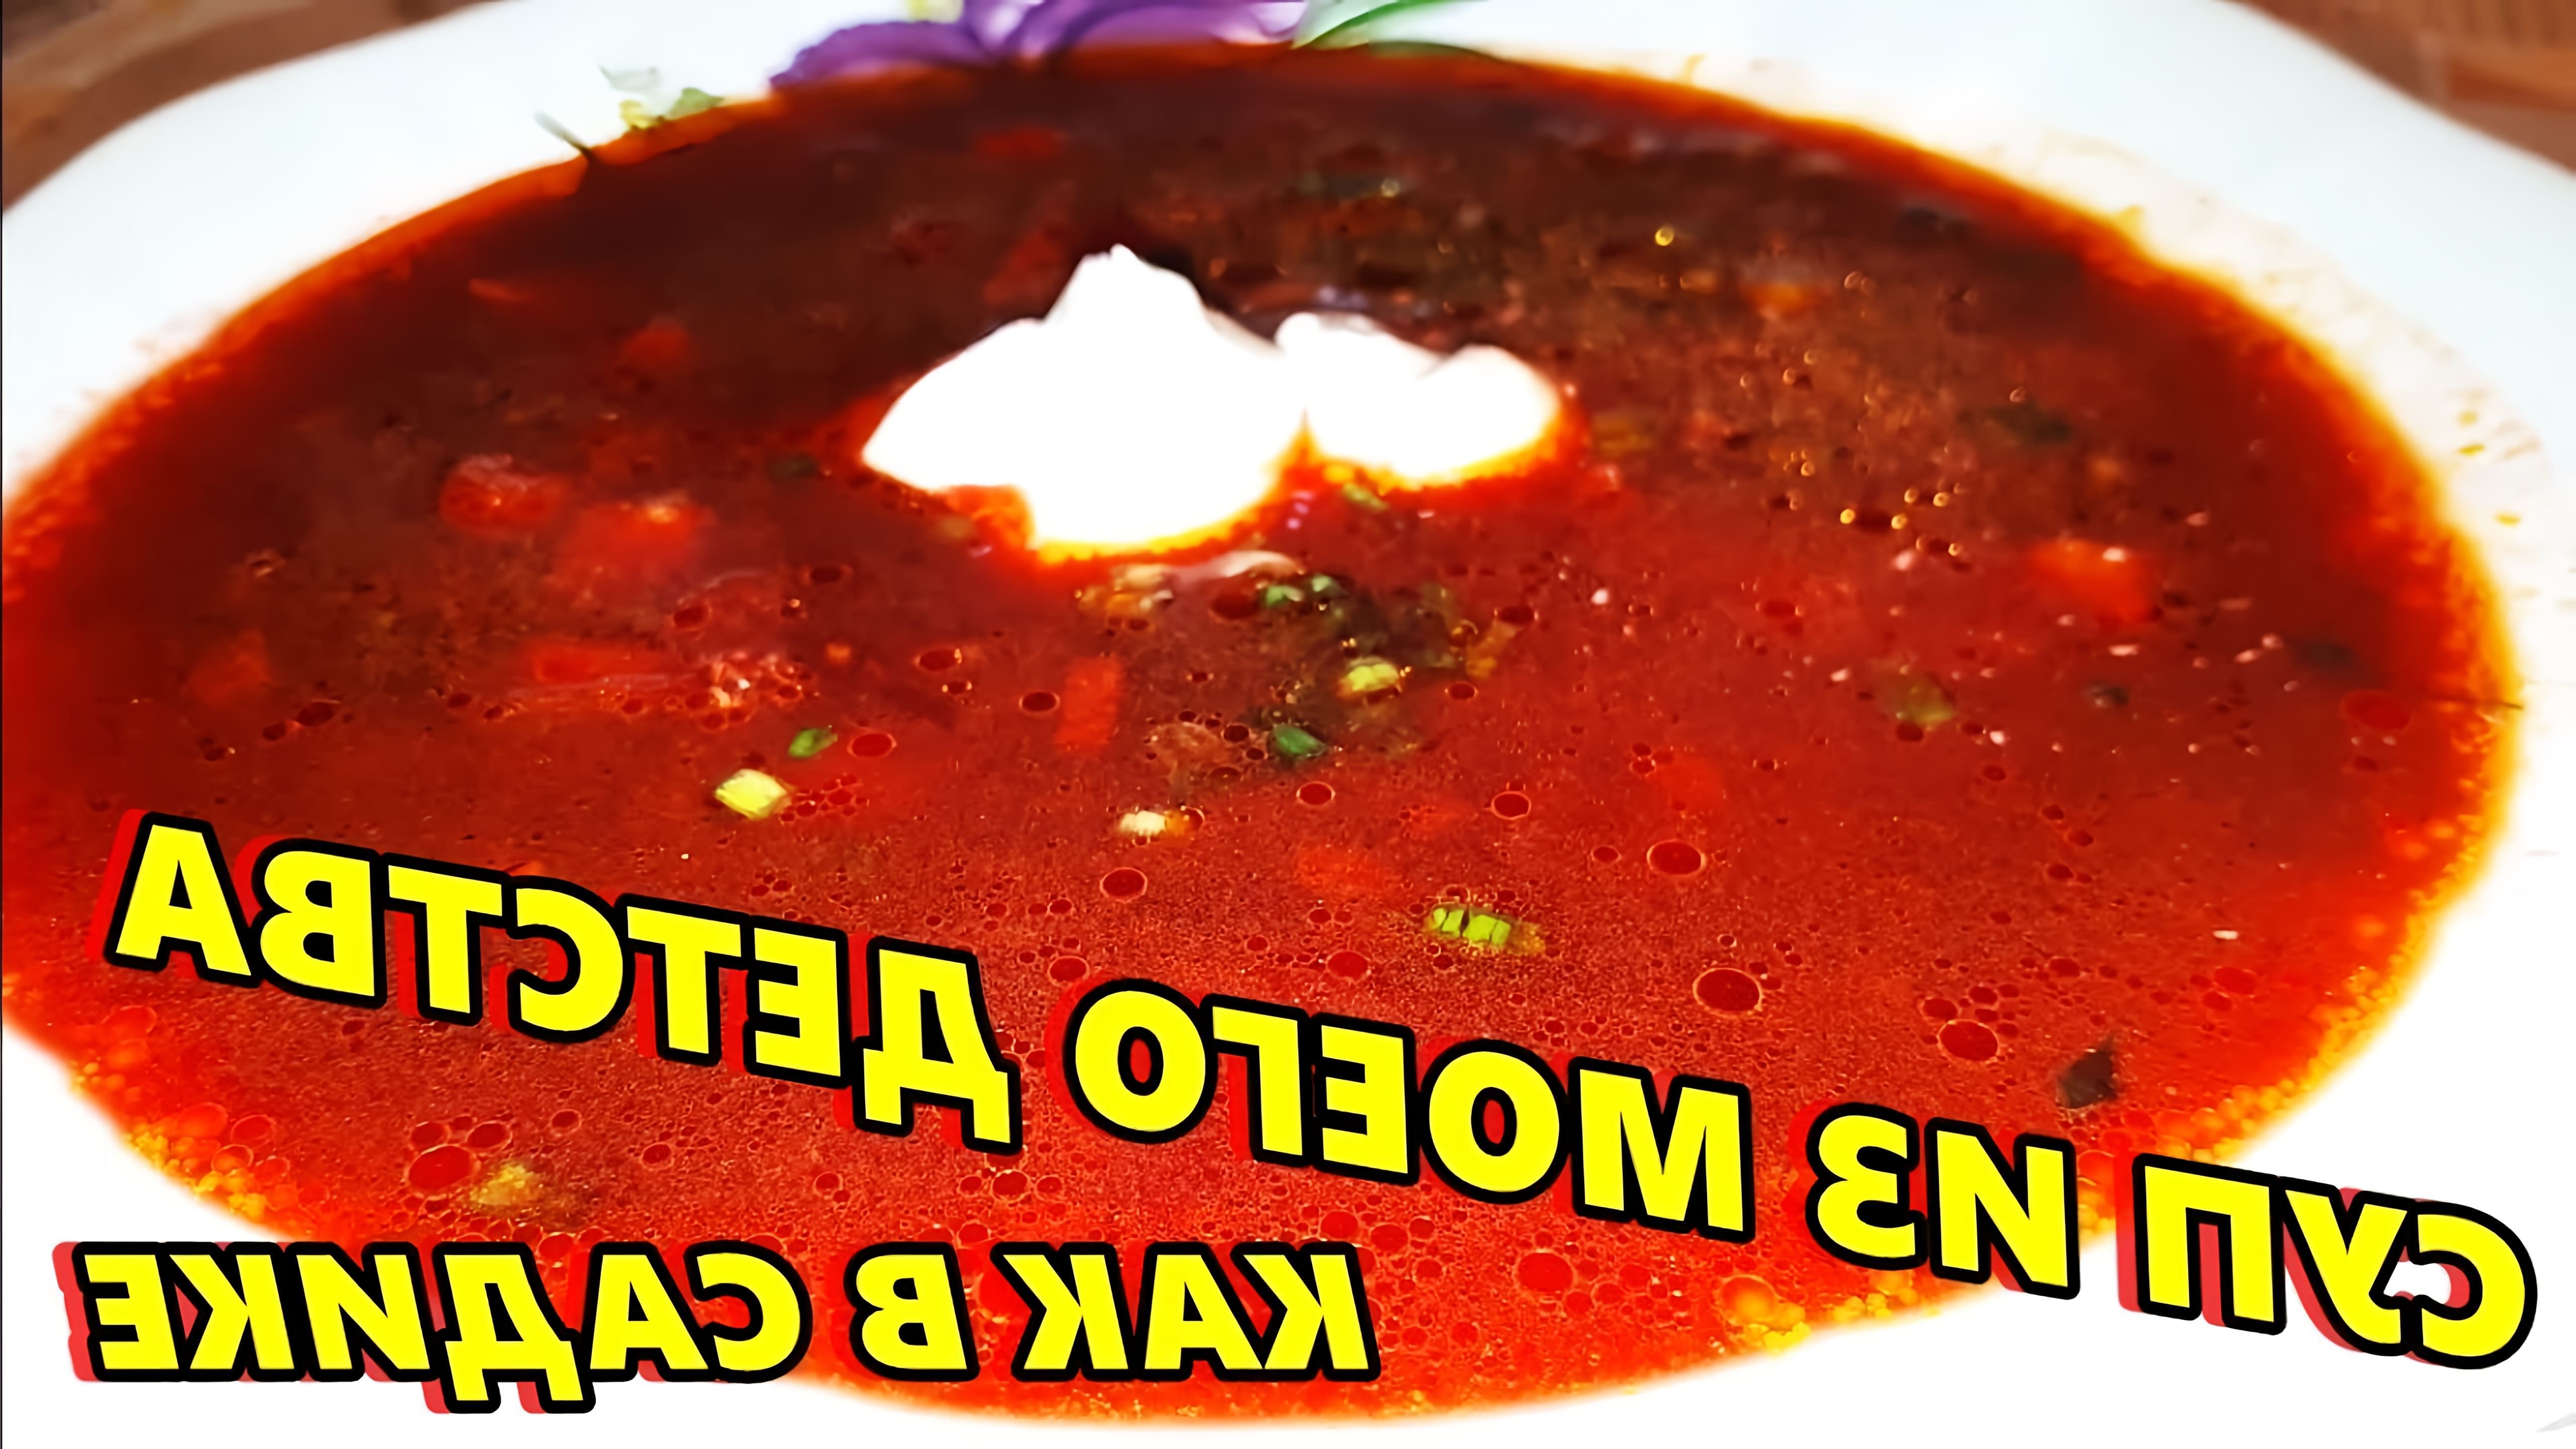 В этом видео демонстрируется рецепт приготовления свекольника - горячего супа из свеклы, картофеля, лука, моркови, чеснока, красного болгарского перца и томатной пасты